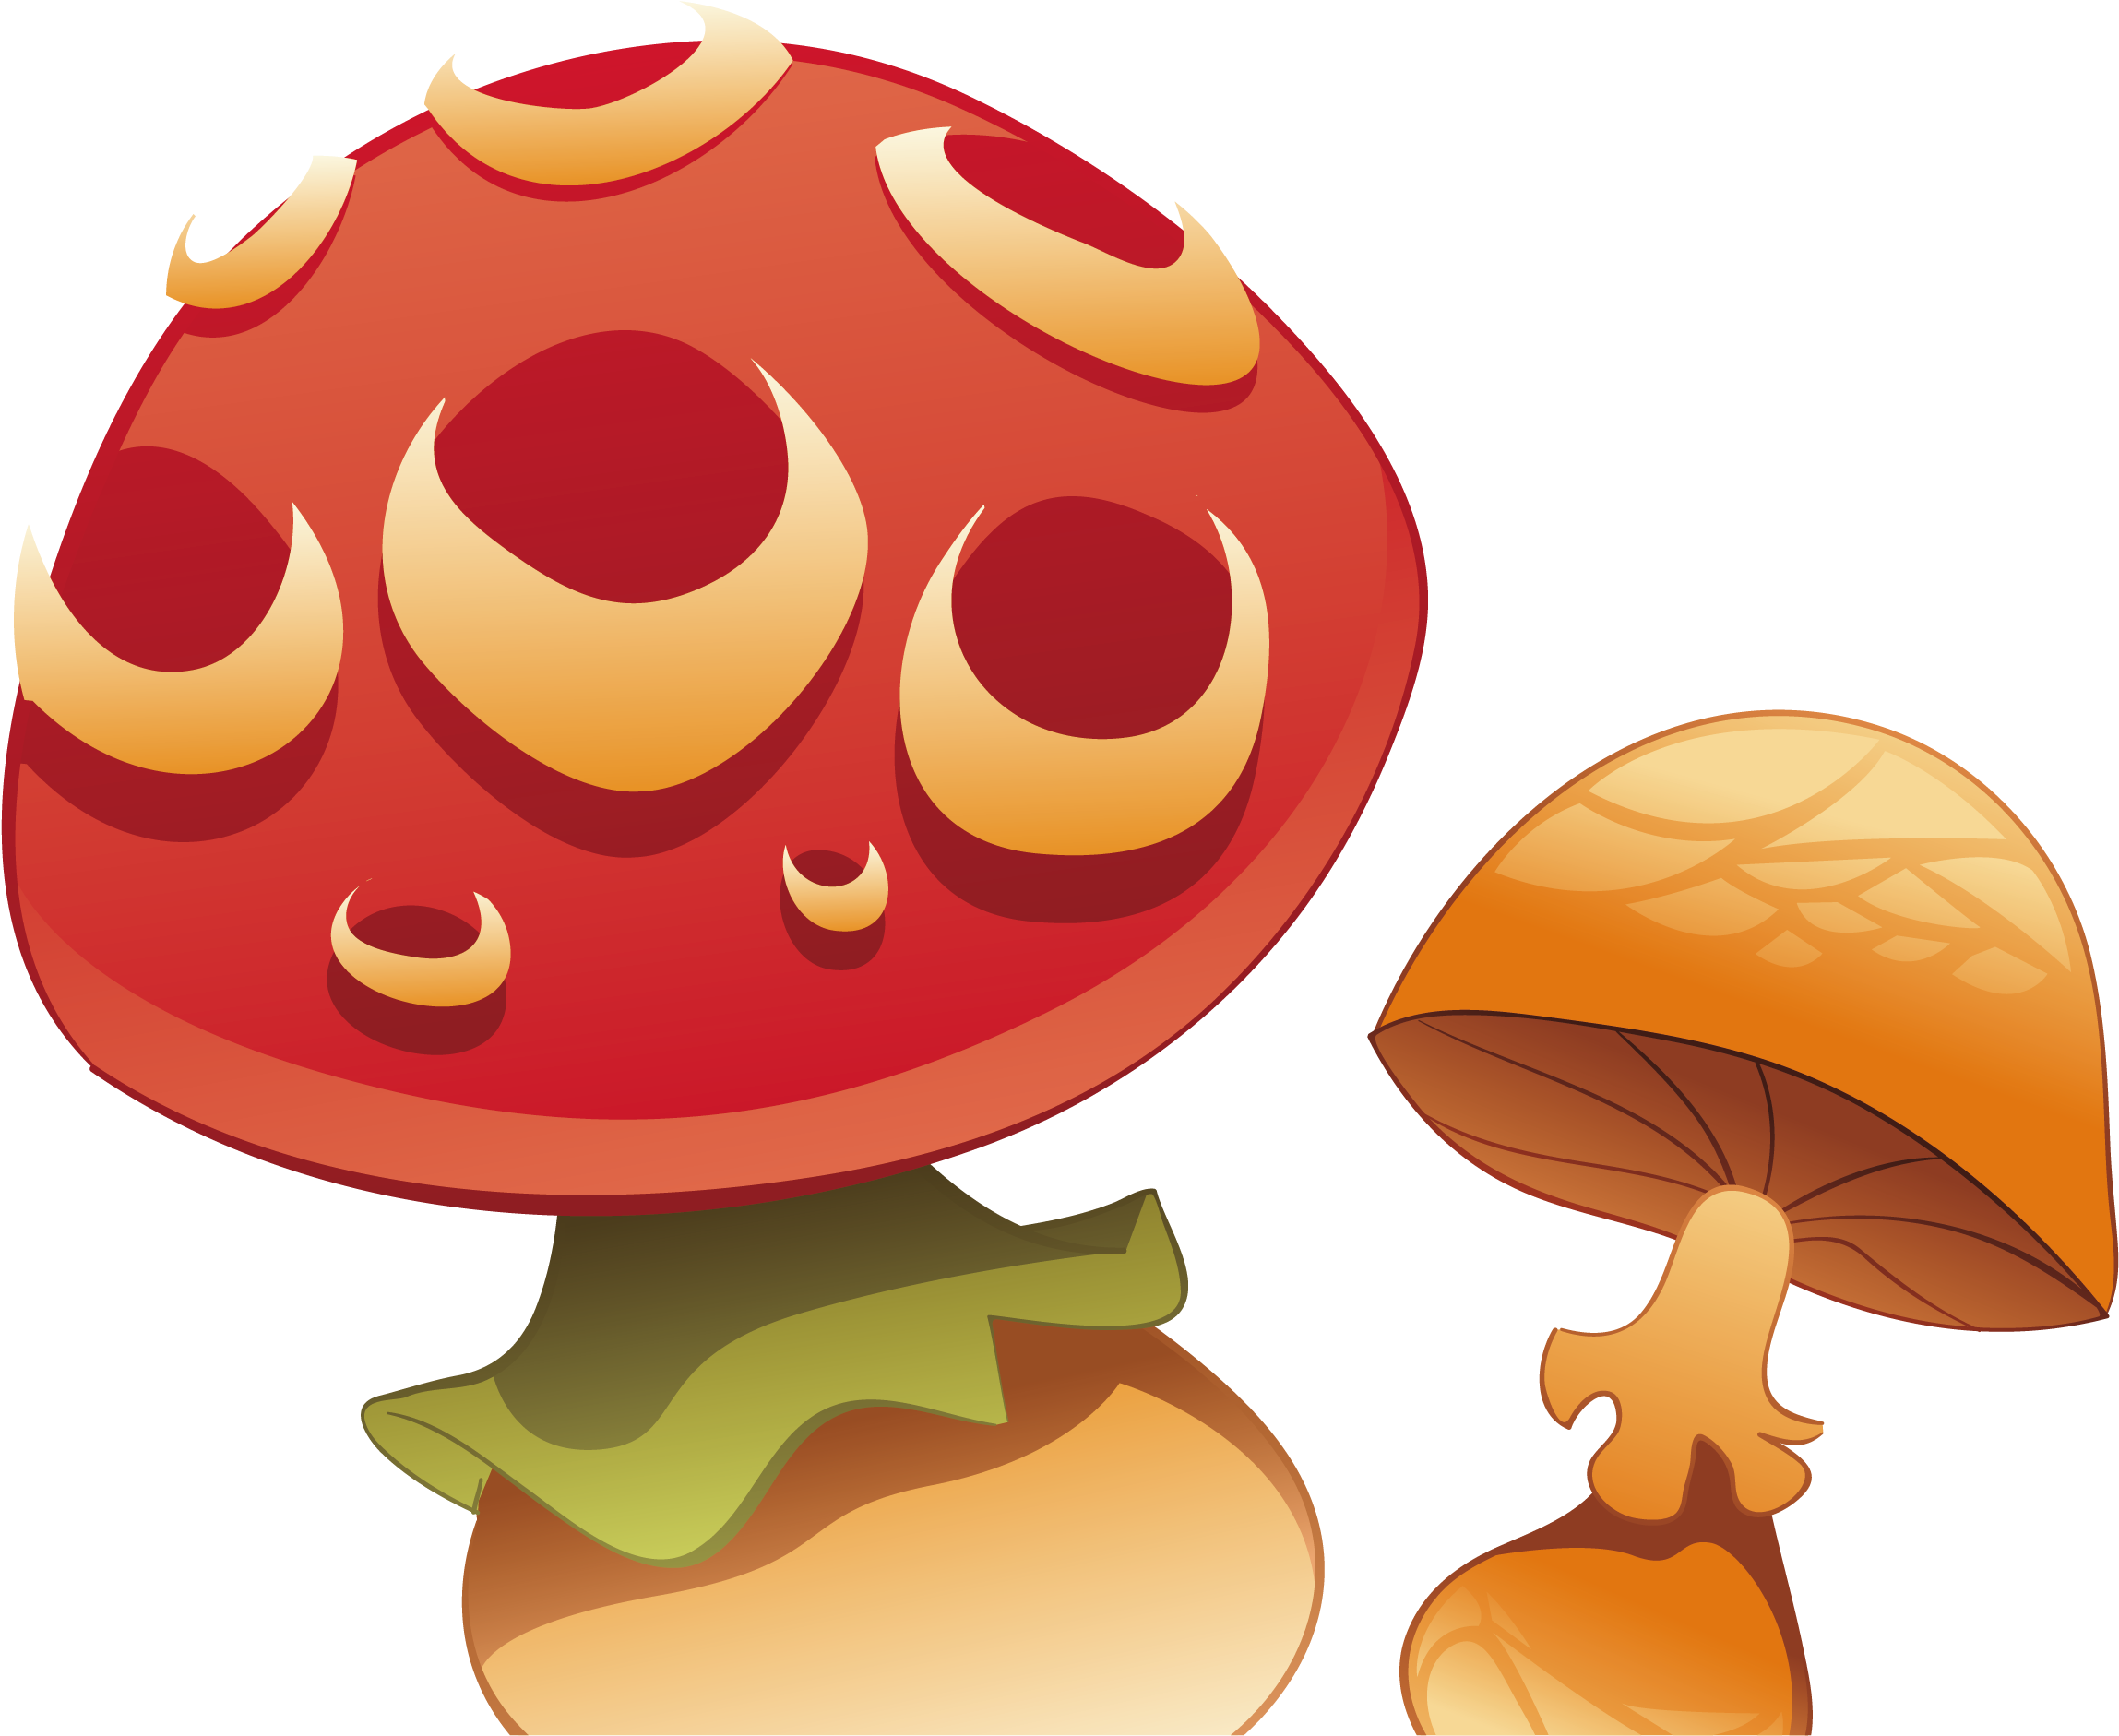 Cartoon Mushroom Illustration - Food (2783x2280)